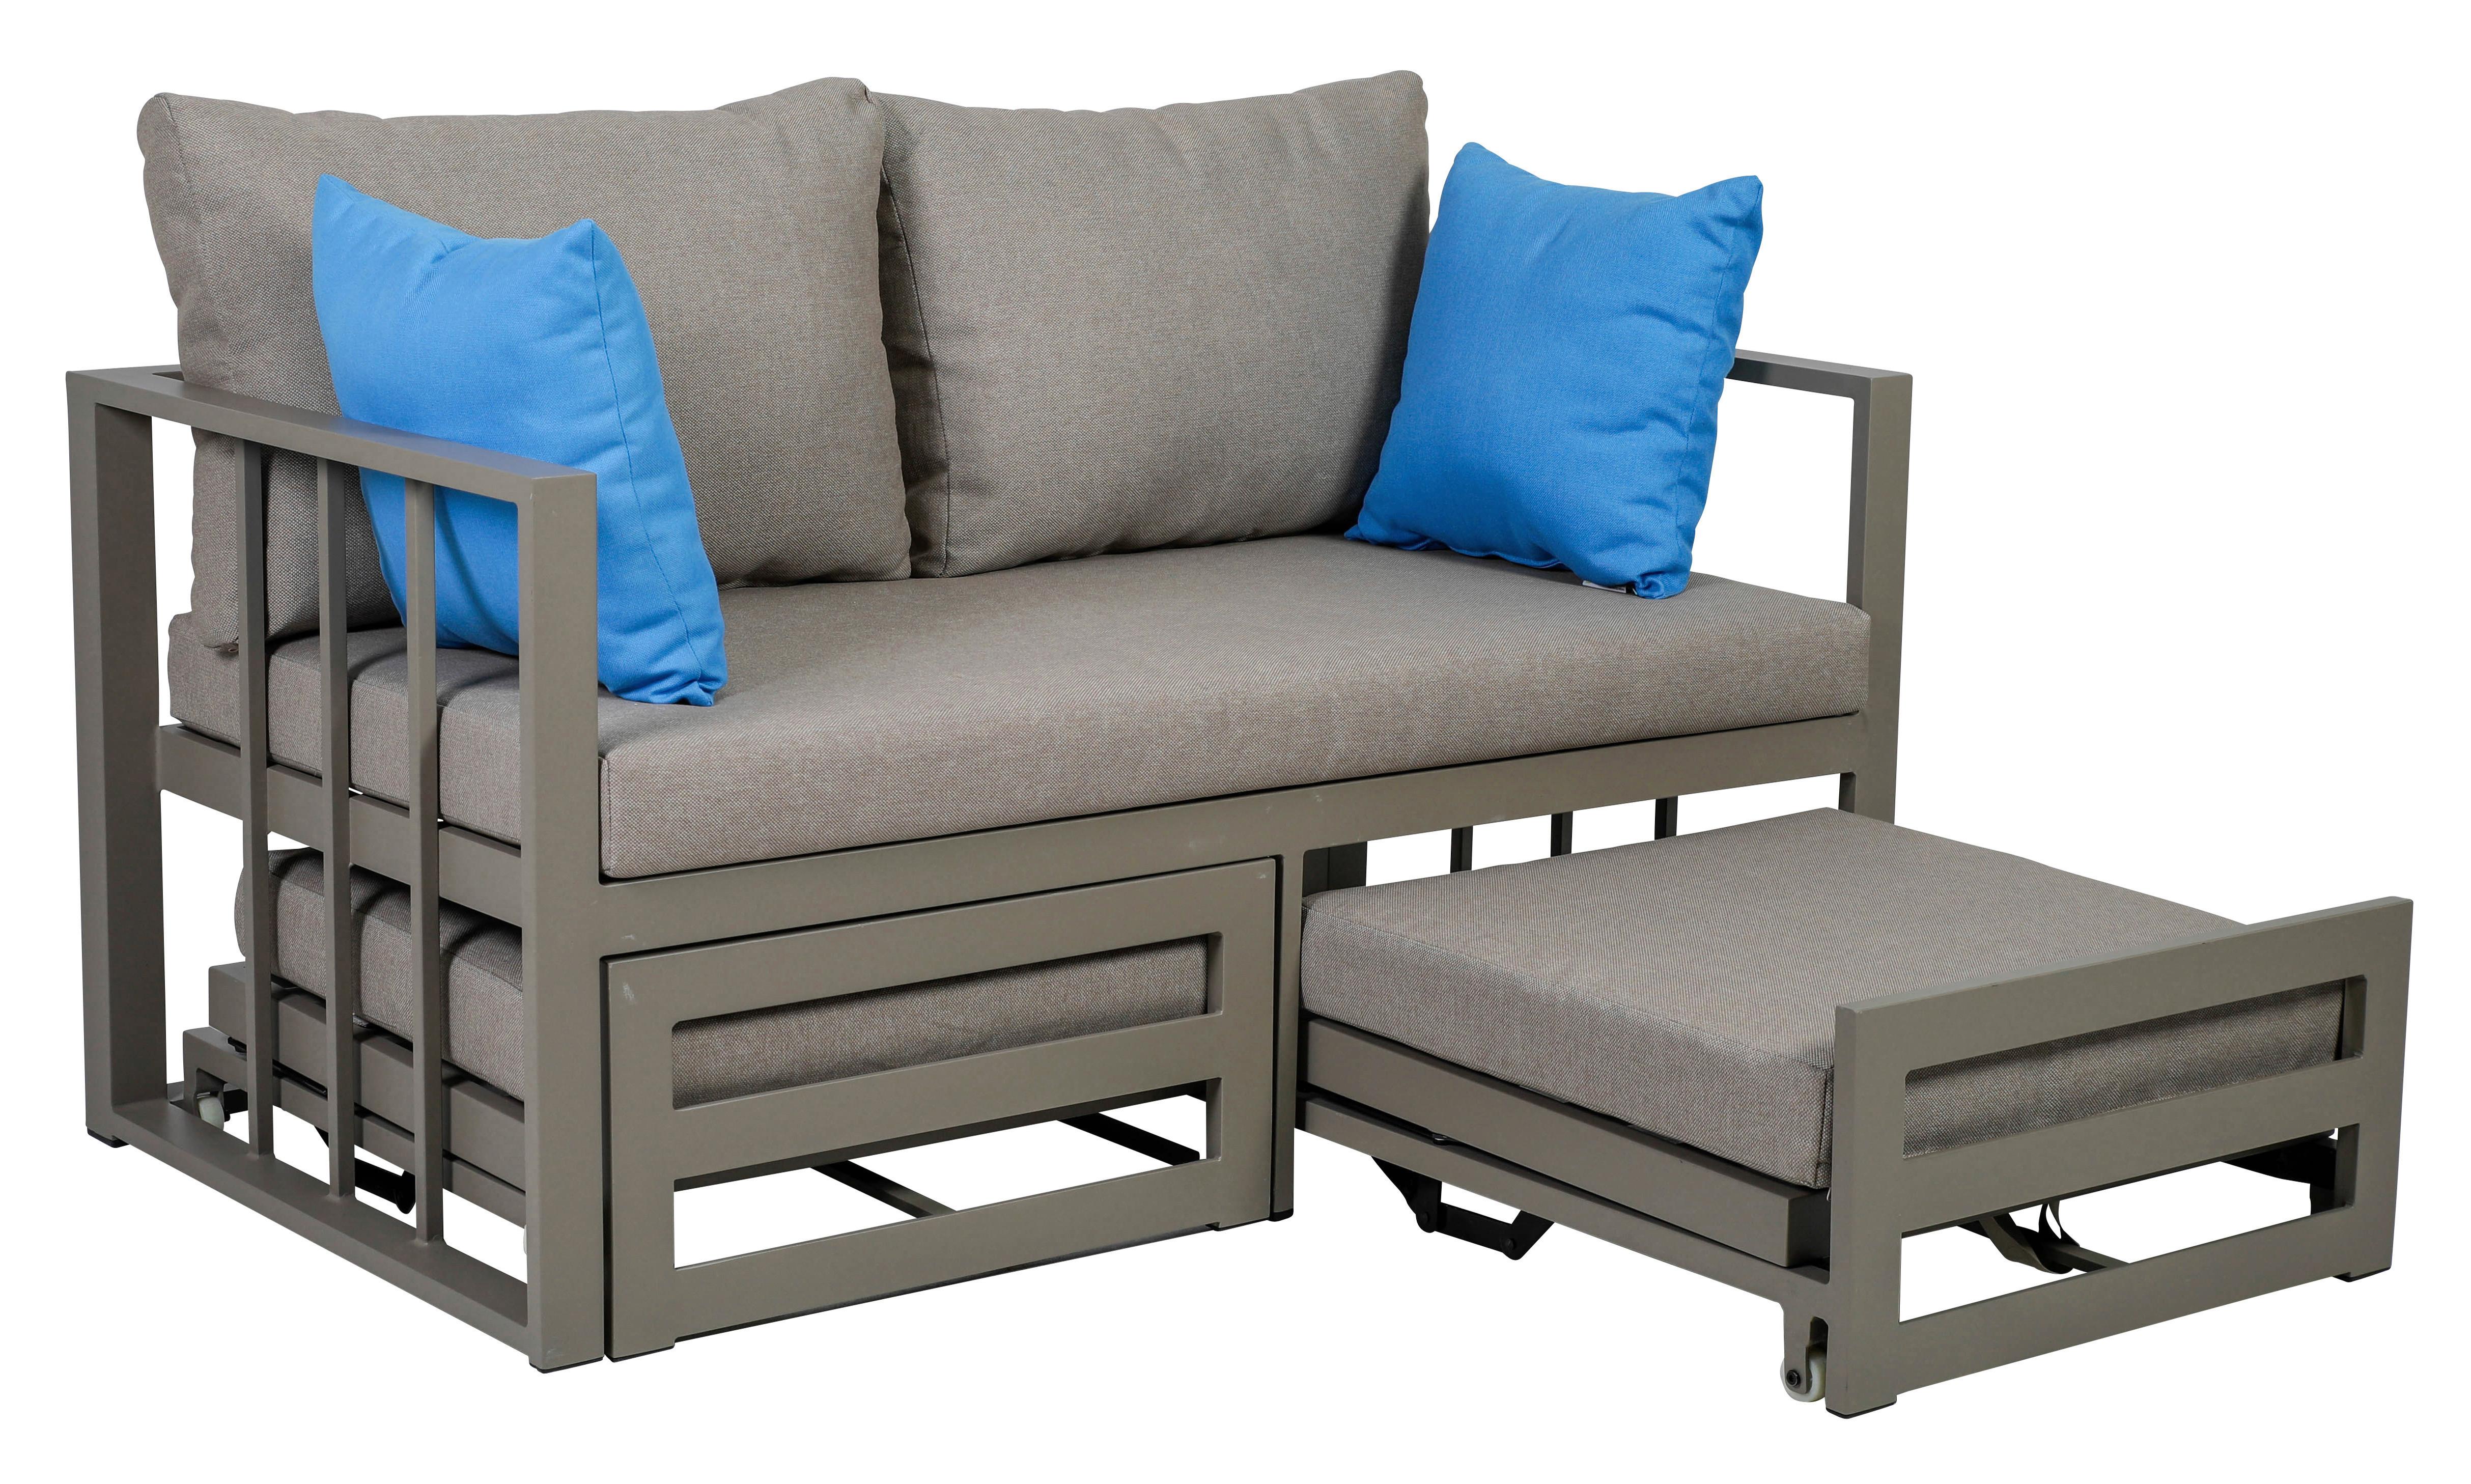 2-Sitzer-Sofa Ausziehbar Nassau Palettenoptik Beige - Beige, Basics, Textil/Metall (134/63/74cm) - Ambia Garden